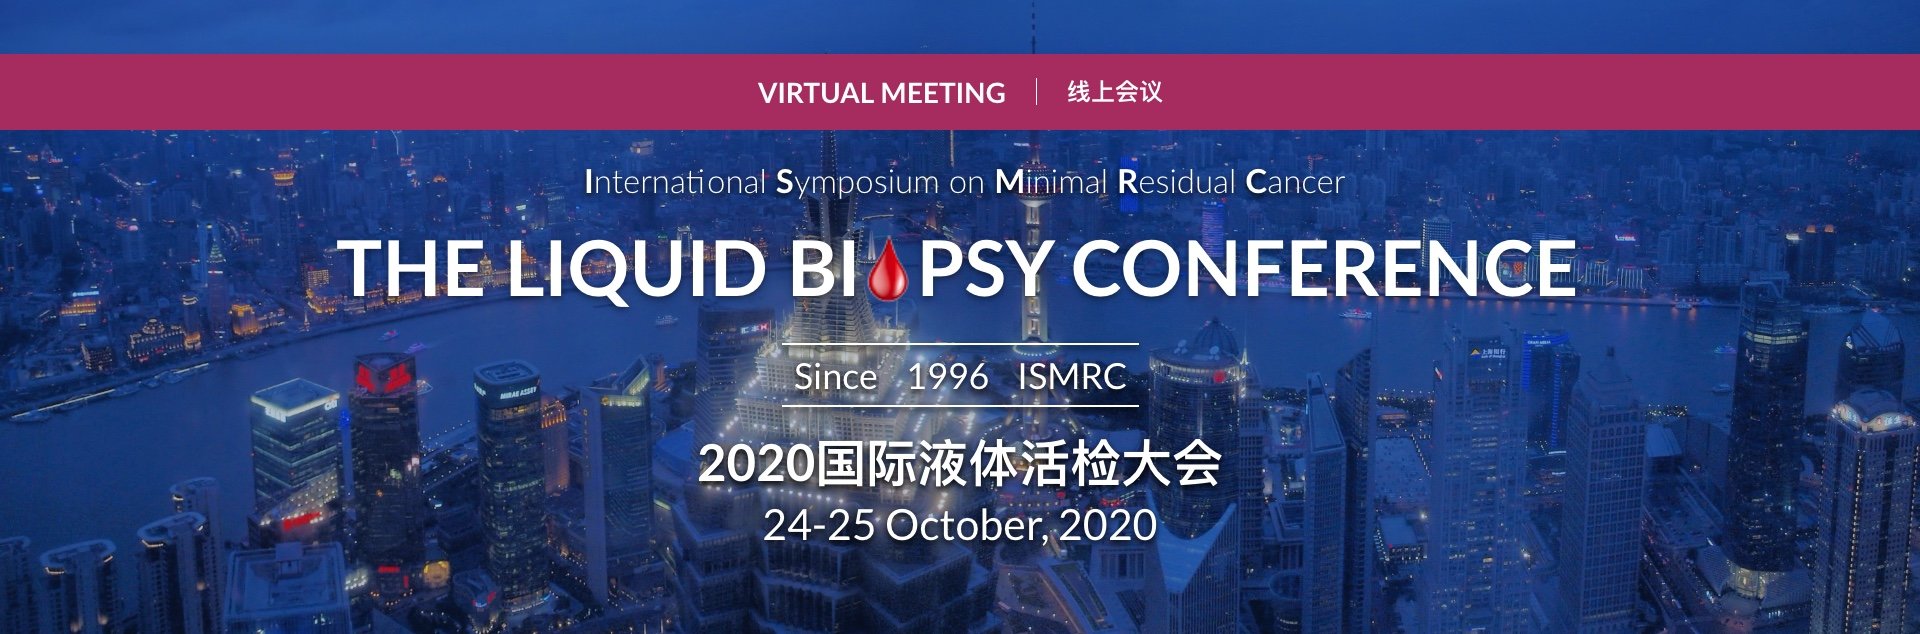 2020国际液体活检大会 在线会议 ISMRC2020 Virtual Meeting-中文站点